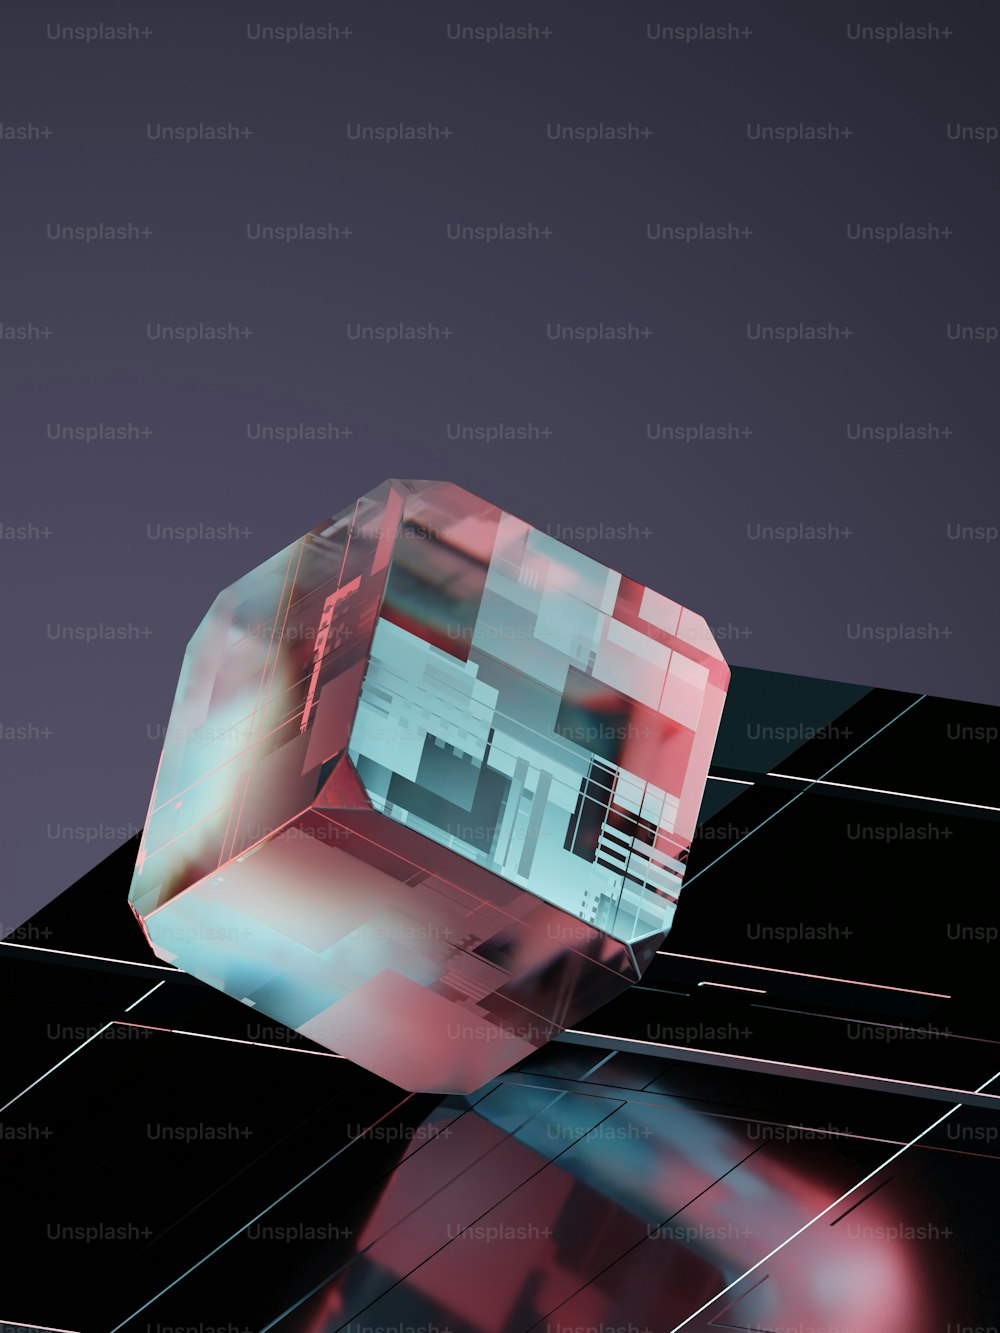 Immagine astratta di un cubo su una superficie nera